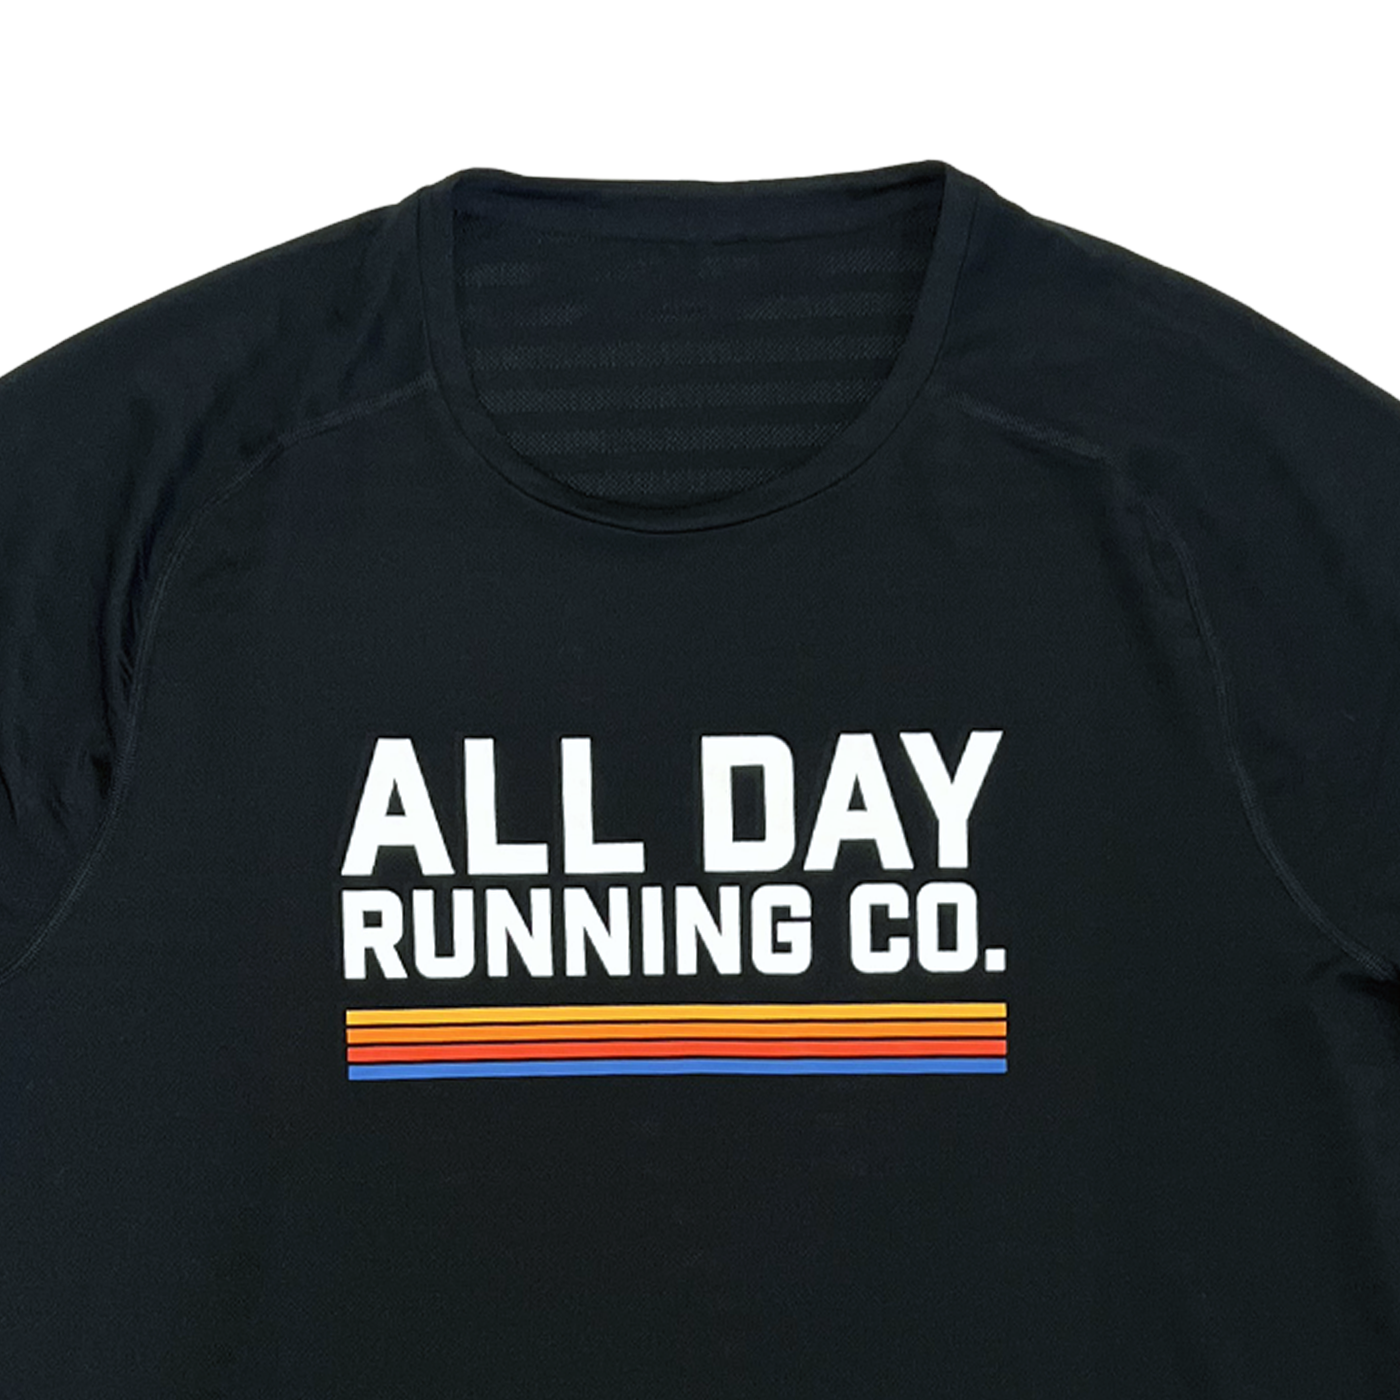 All Day x Rhône Long Sleeve Performance Shirt